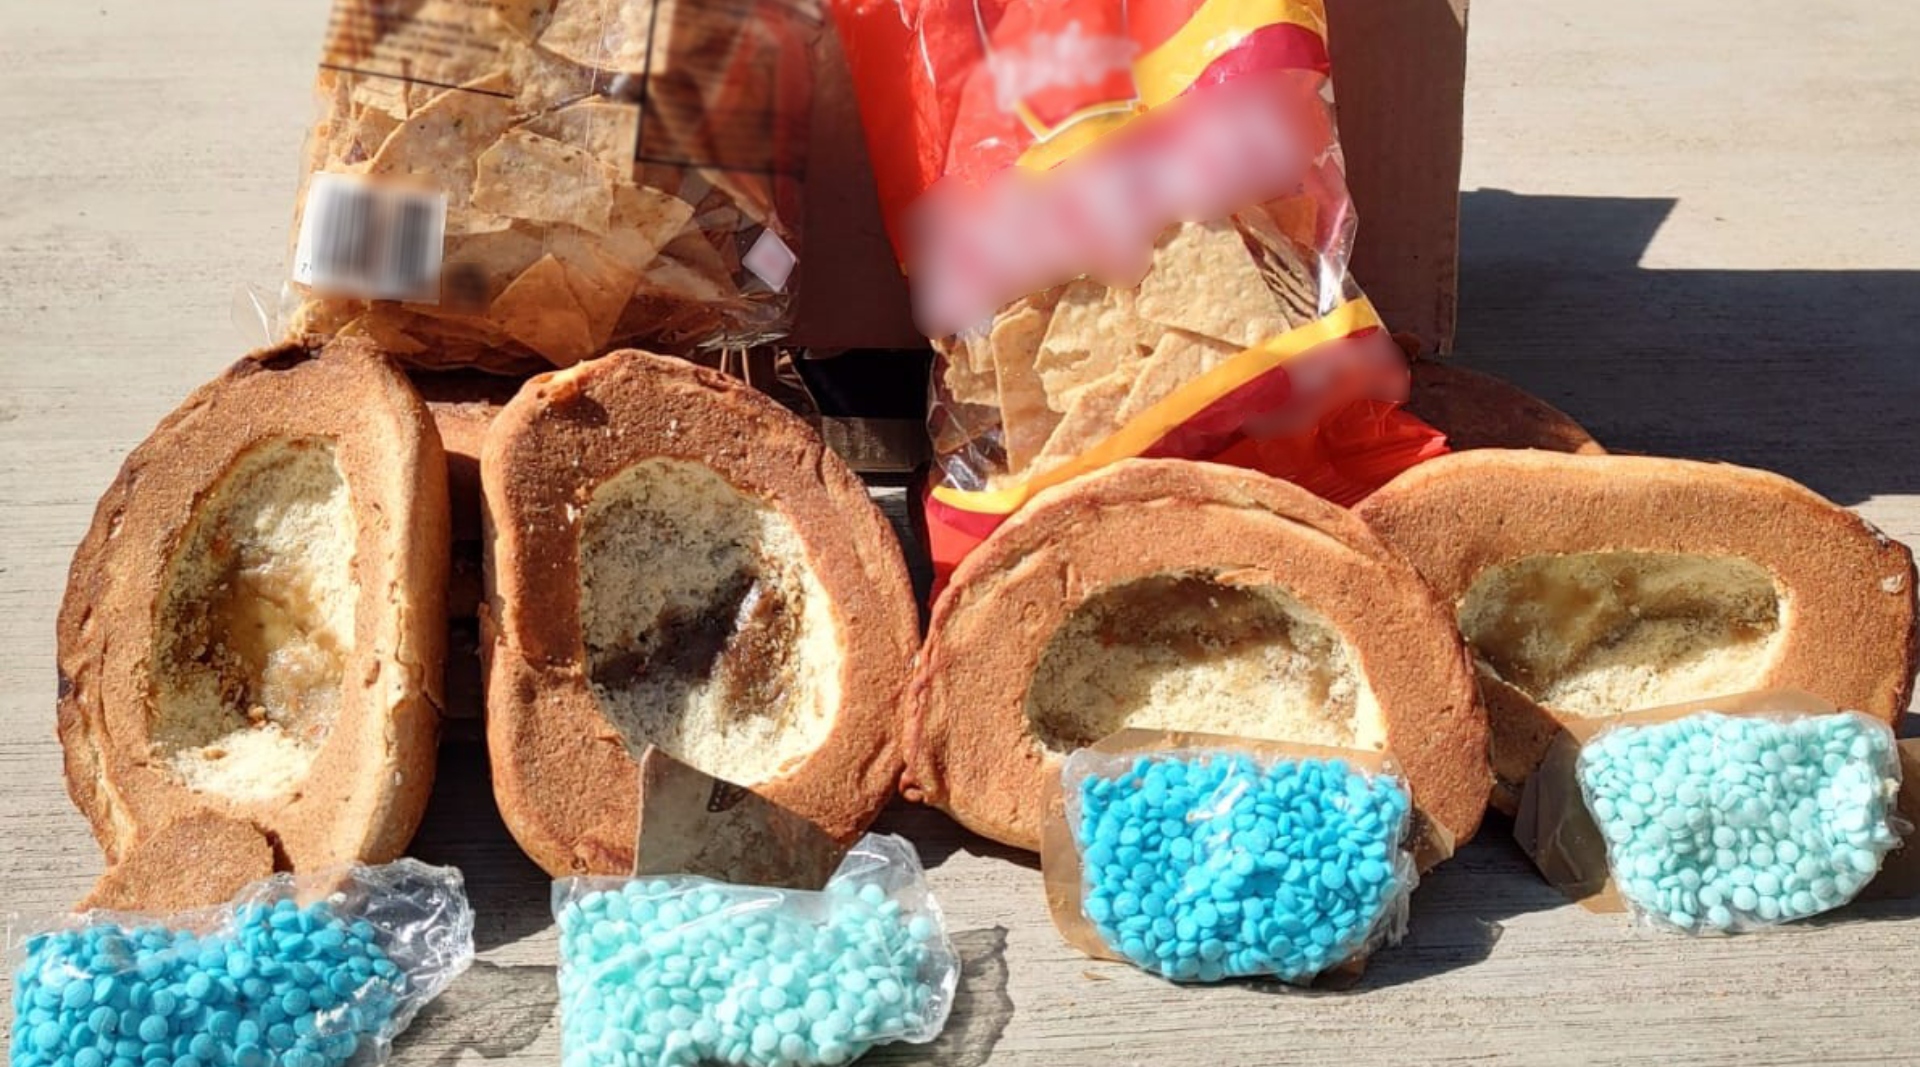 Las piezas de pan fueron preparadas de manera artesanal y adaptadas para ocultar la sustancia. 
(Foto: Guardia Nacional)